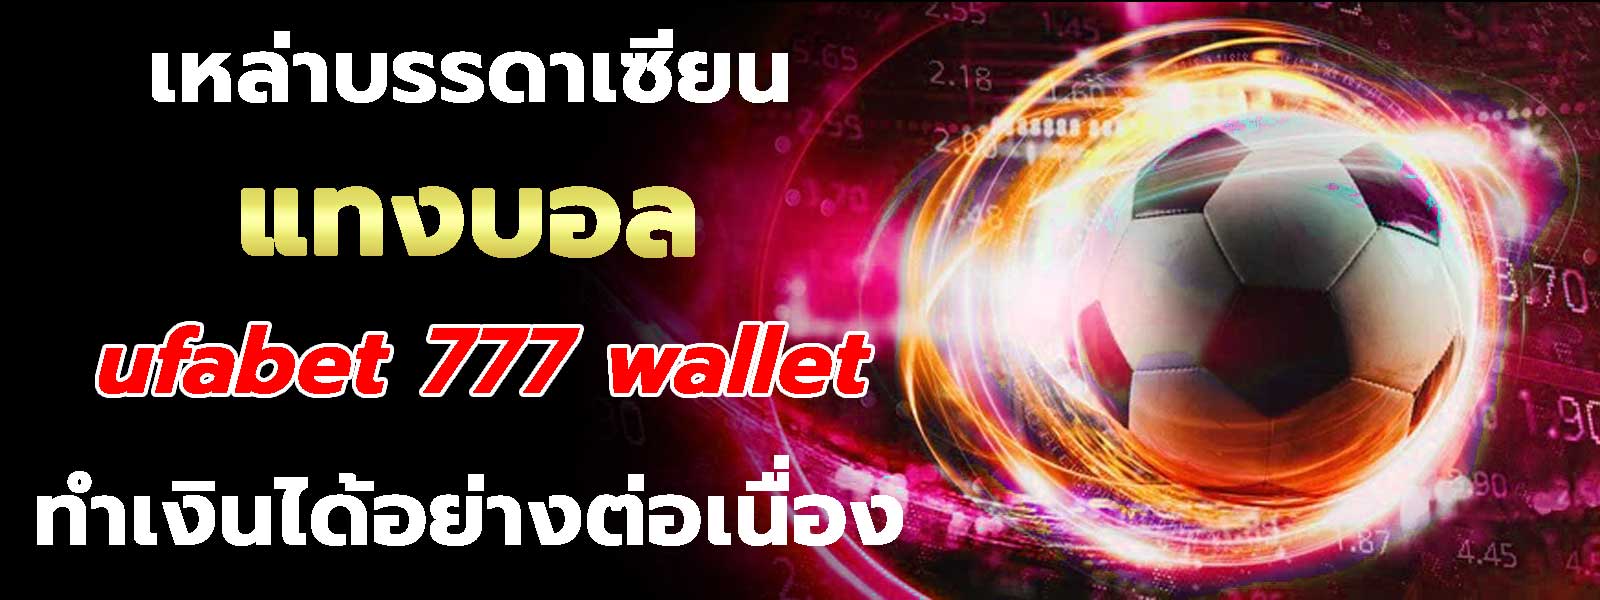 แทงบอล ufabet 777 wallet